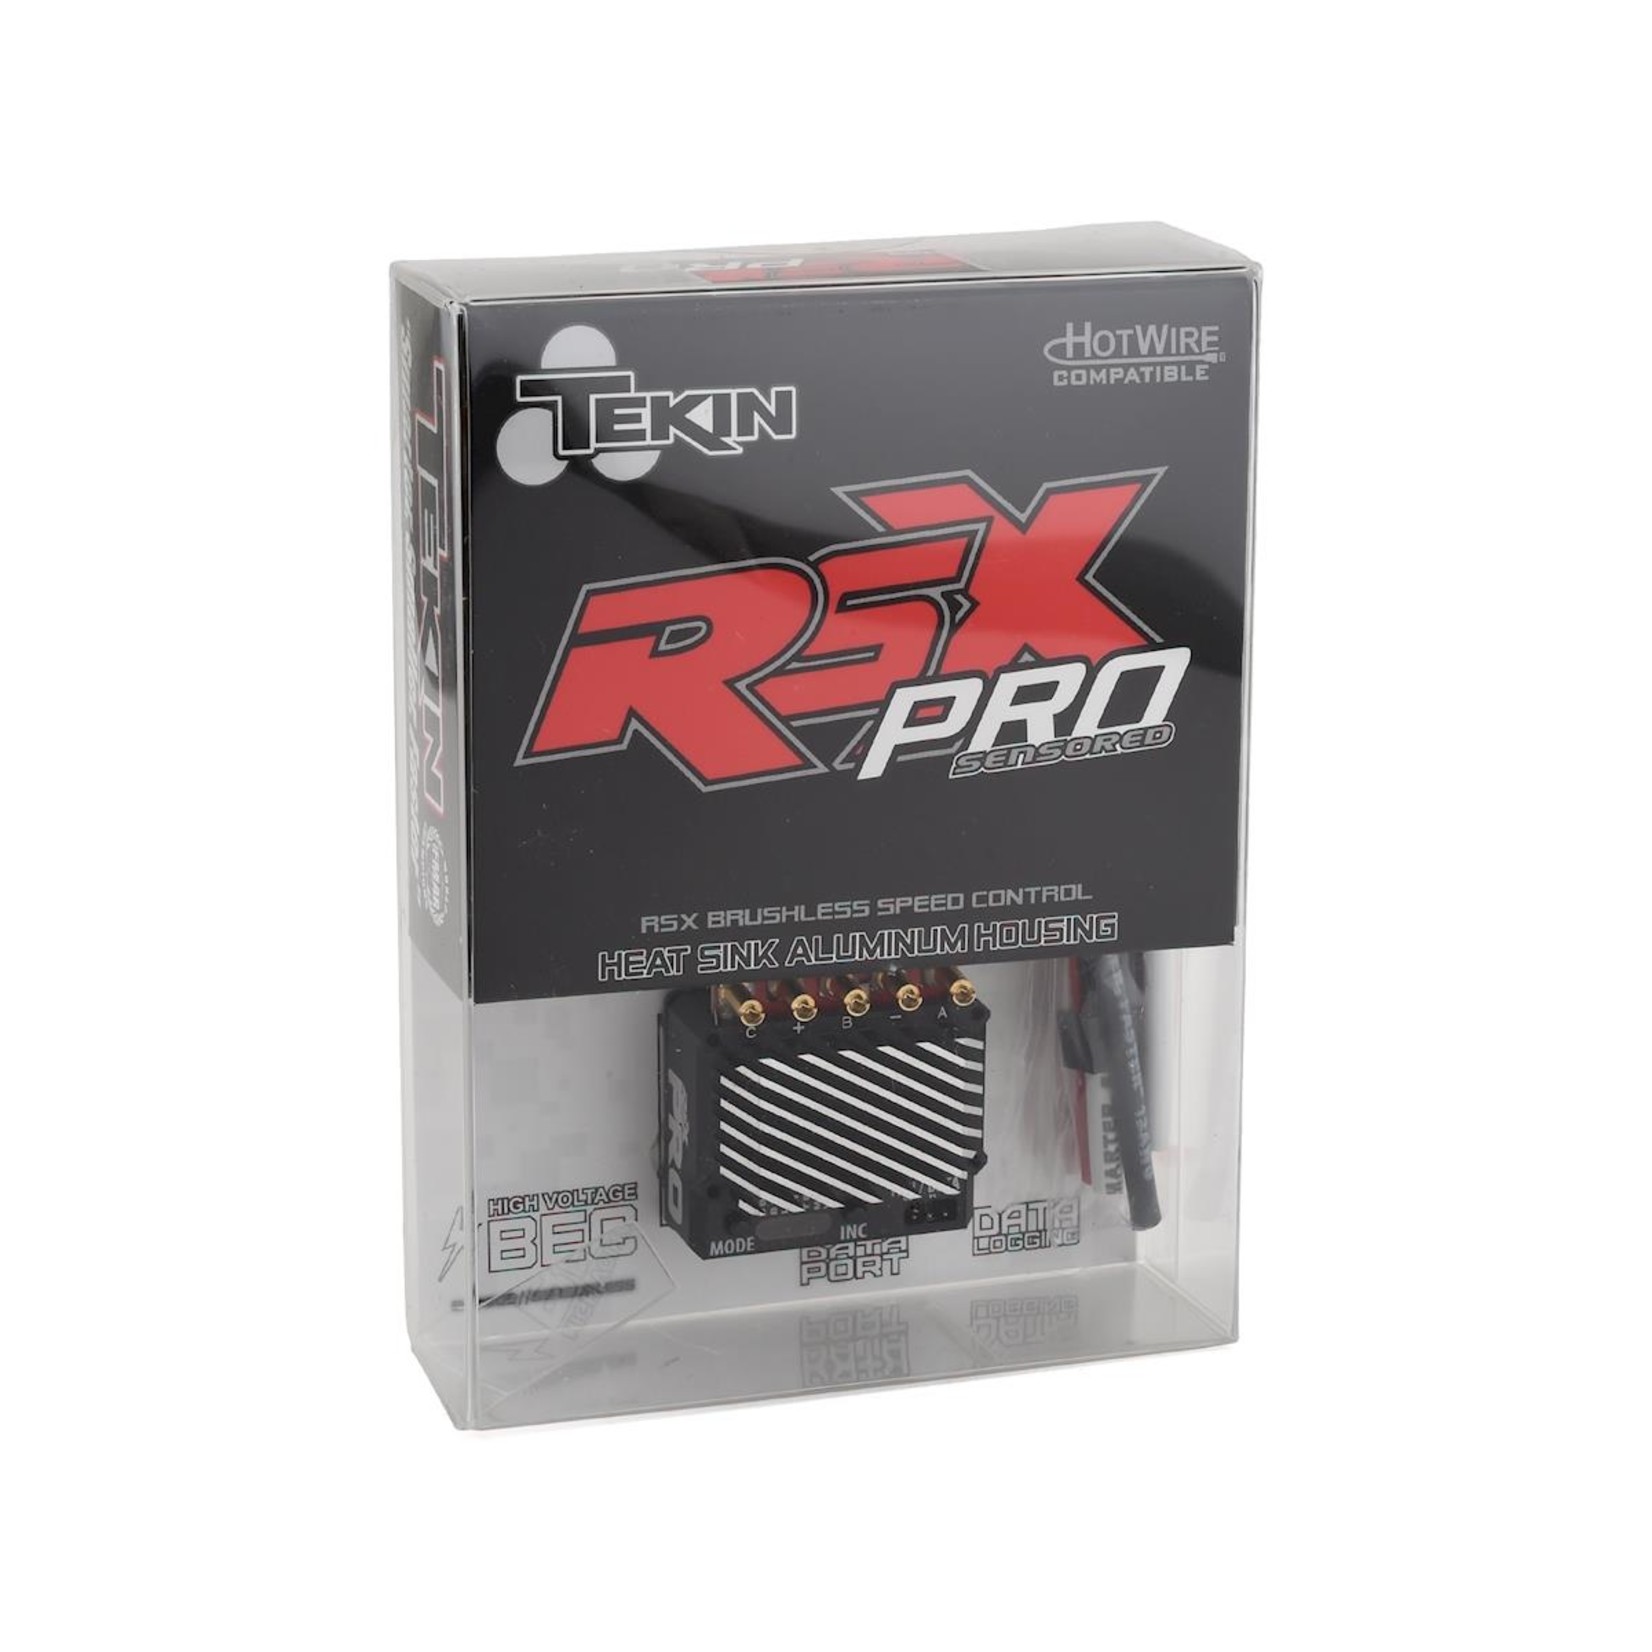 Tekin Tekin RSX Pro Sensored Brushless ESC #TT1159